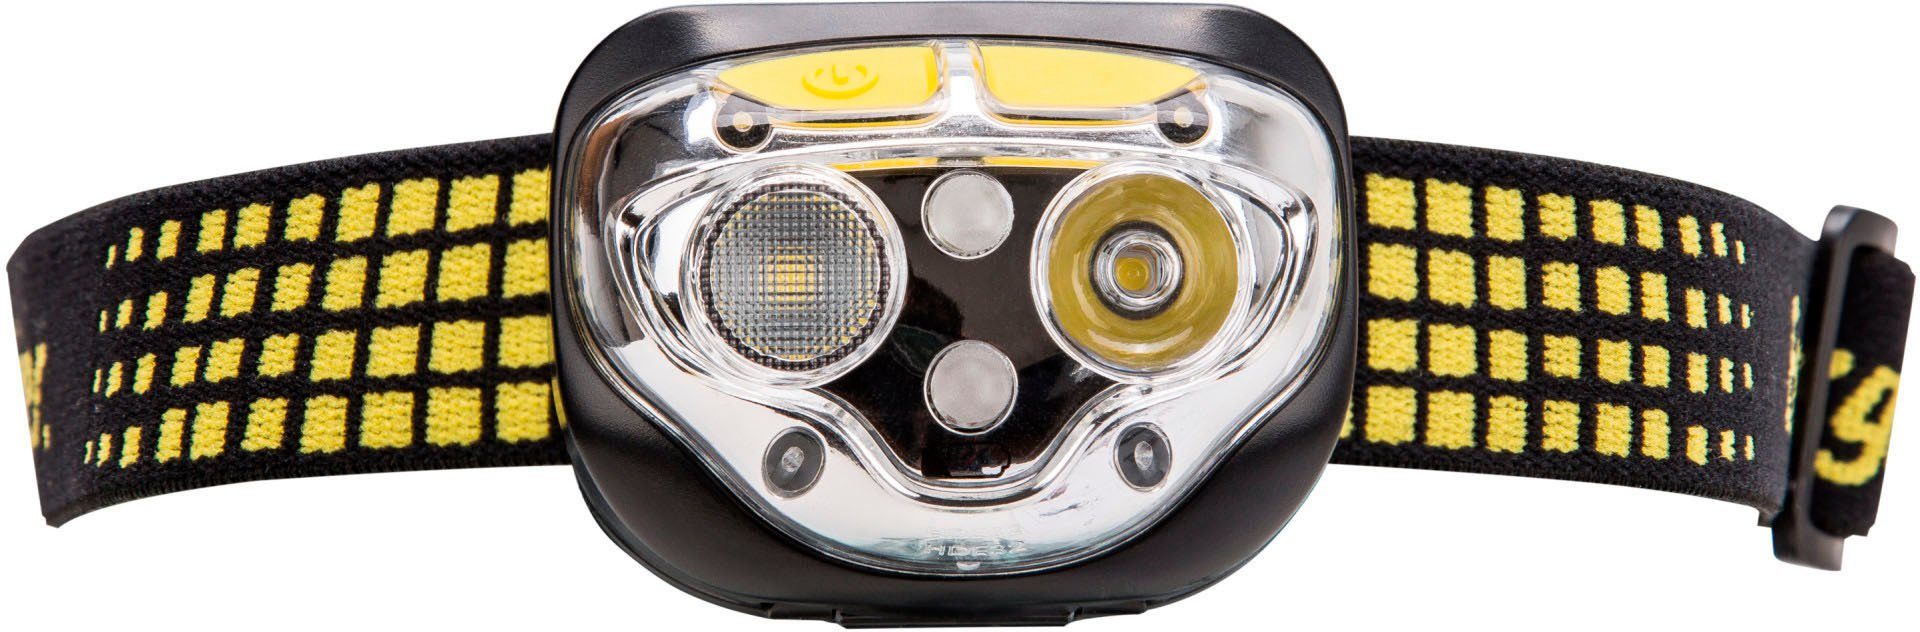 LED Energizer Vision Stirnlampe 450 Lumen Ultra